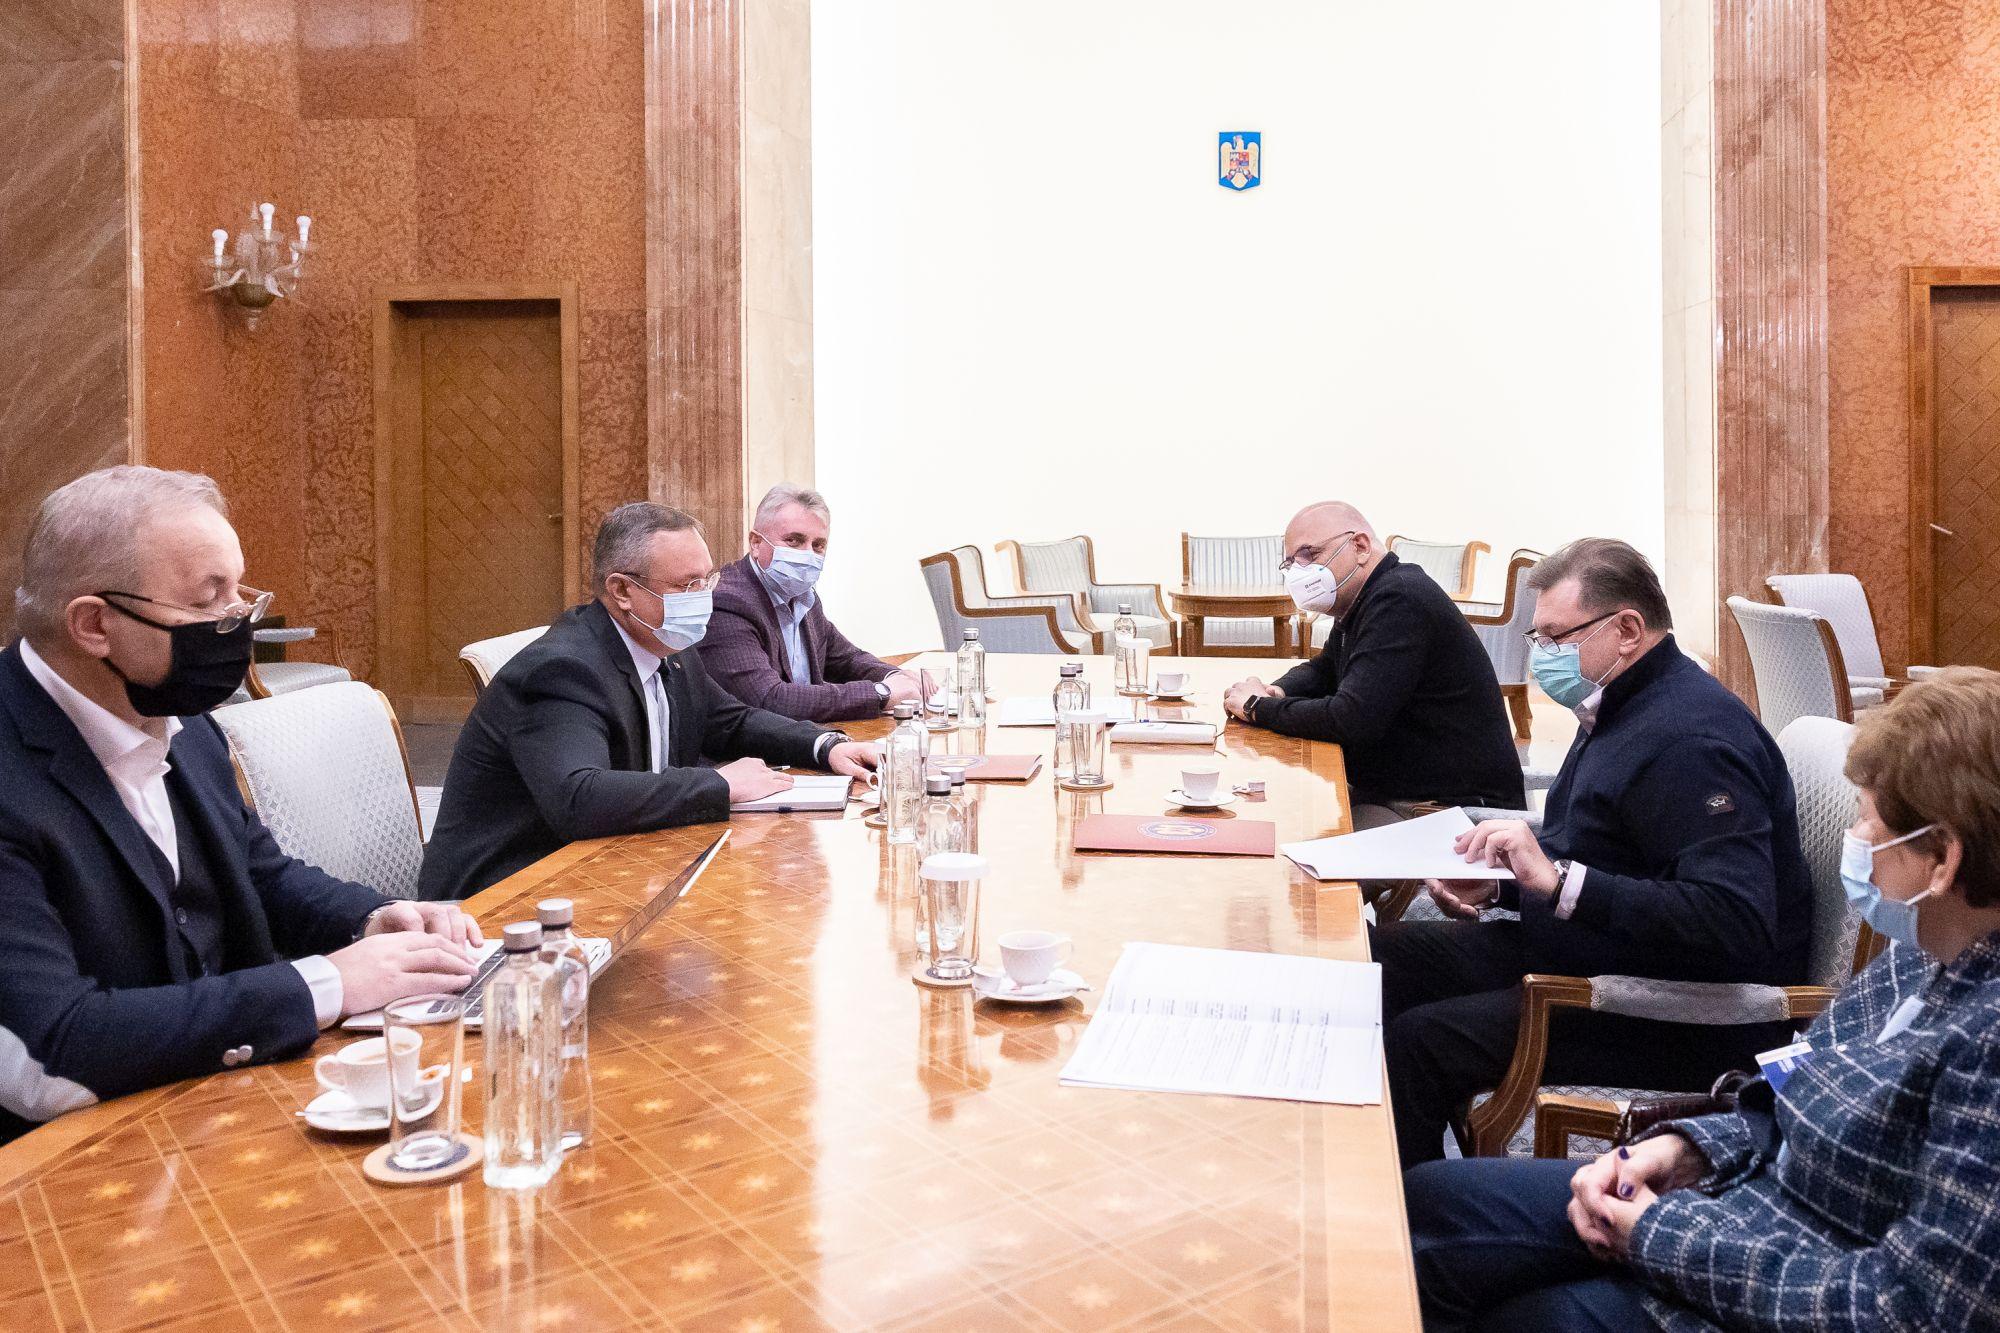 Premierul Nicolae Ciucă s-a întâlnit cu responsabilii gestionării pandemiei pentru a pregăti noi măsuri